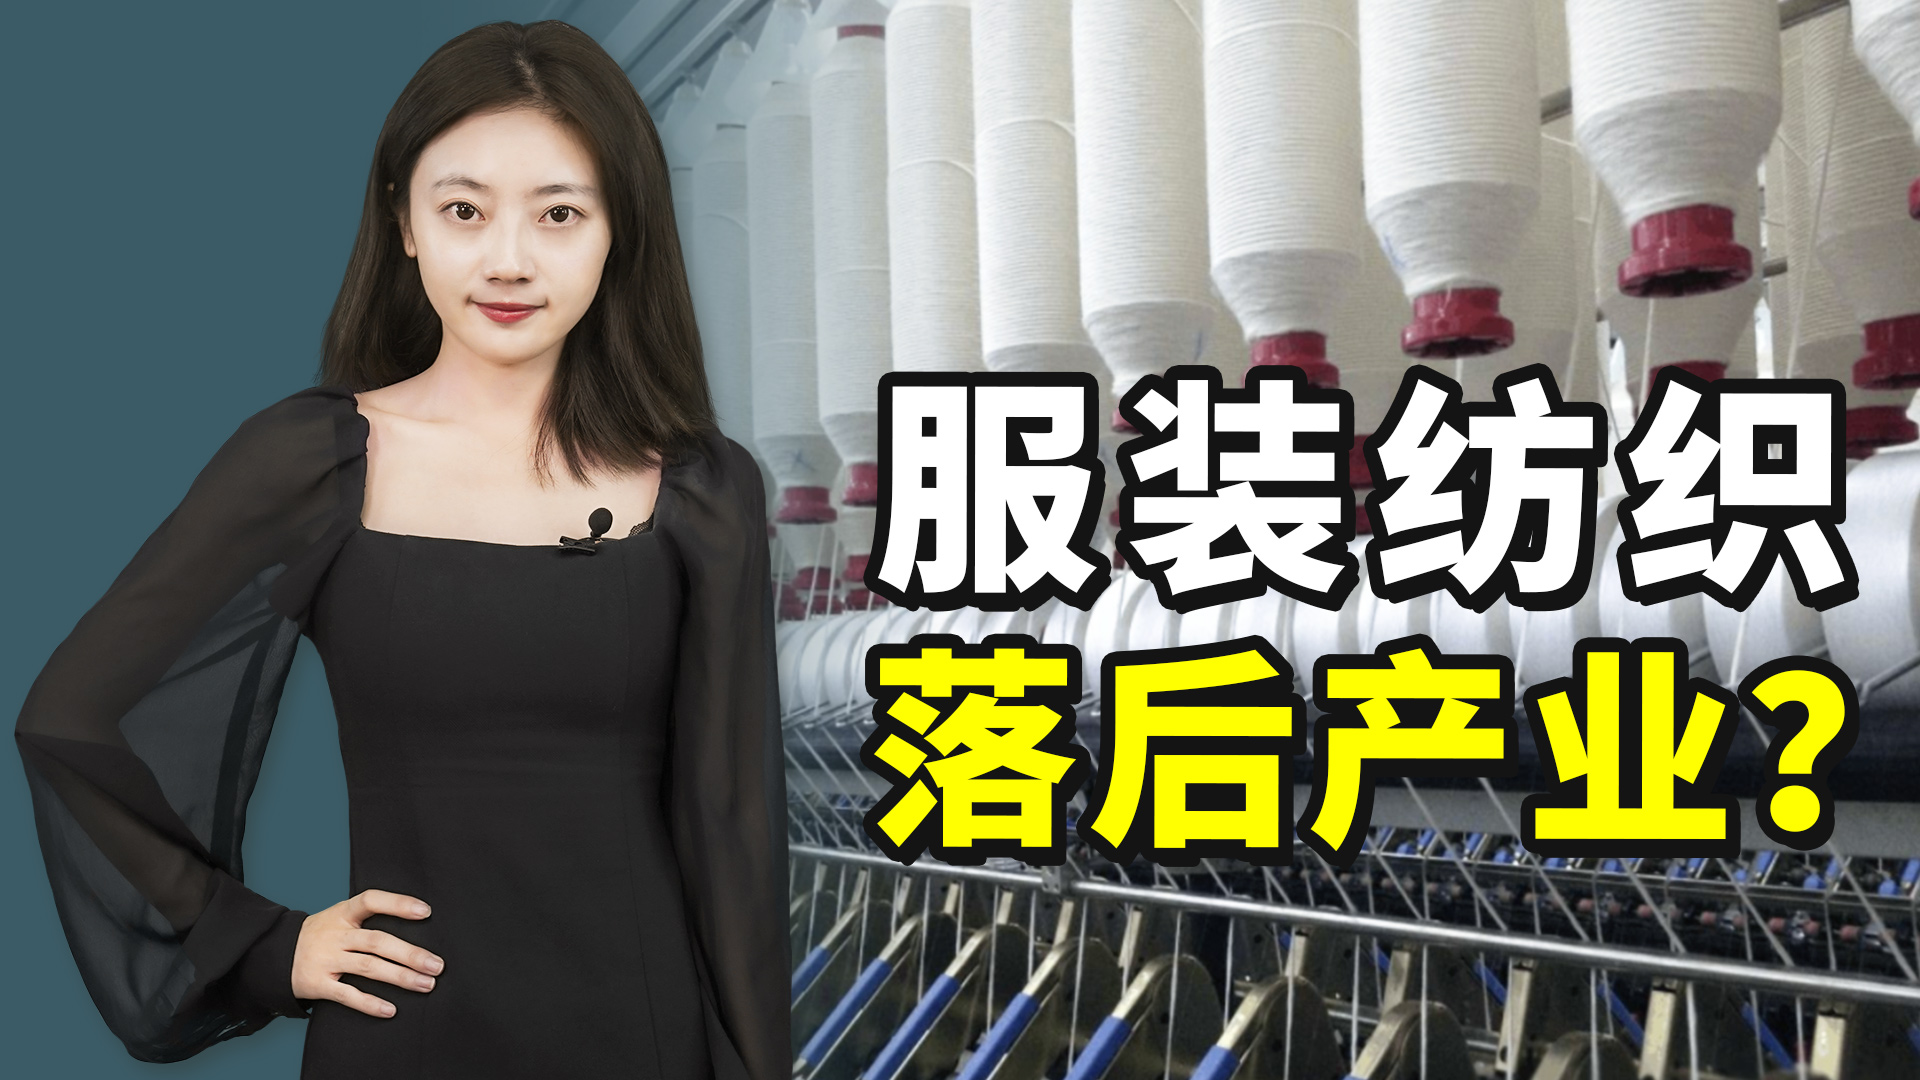 “衬衣换波音”，这是对中国纺织业的最大误解